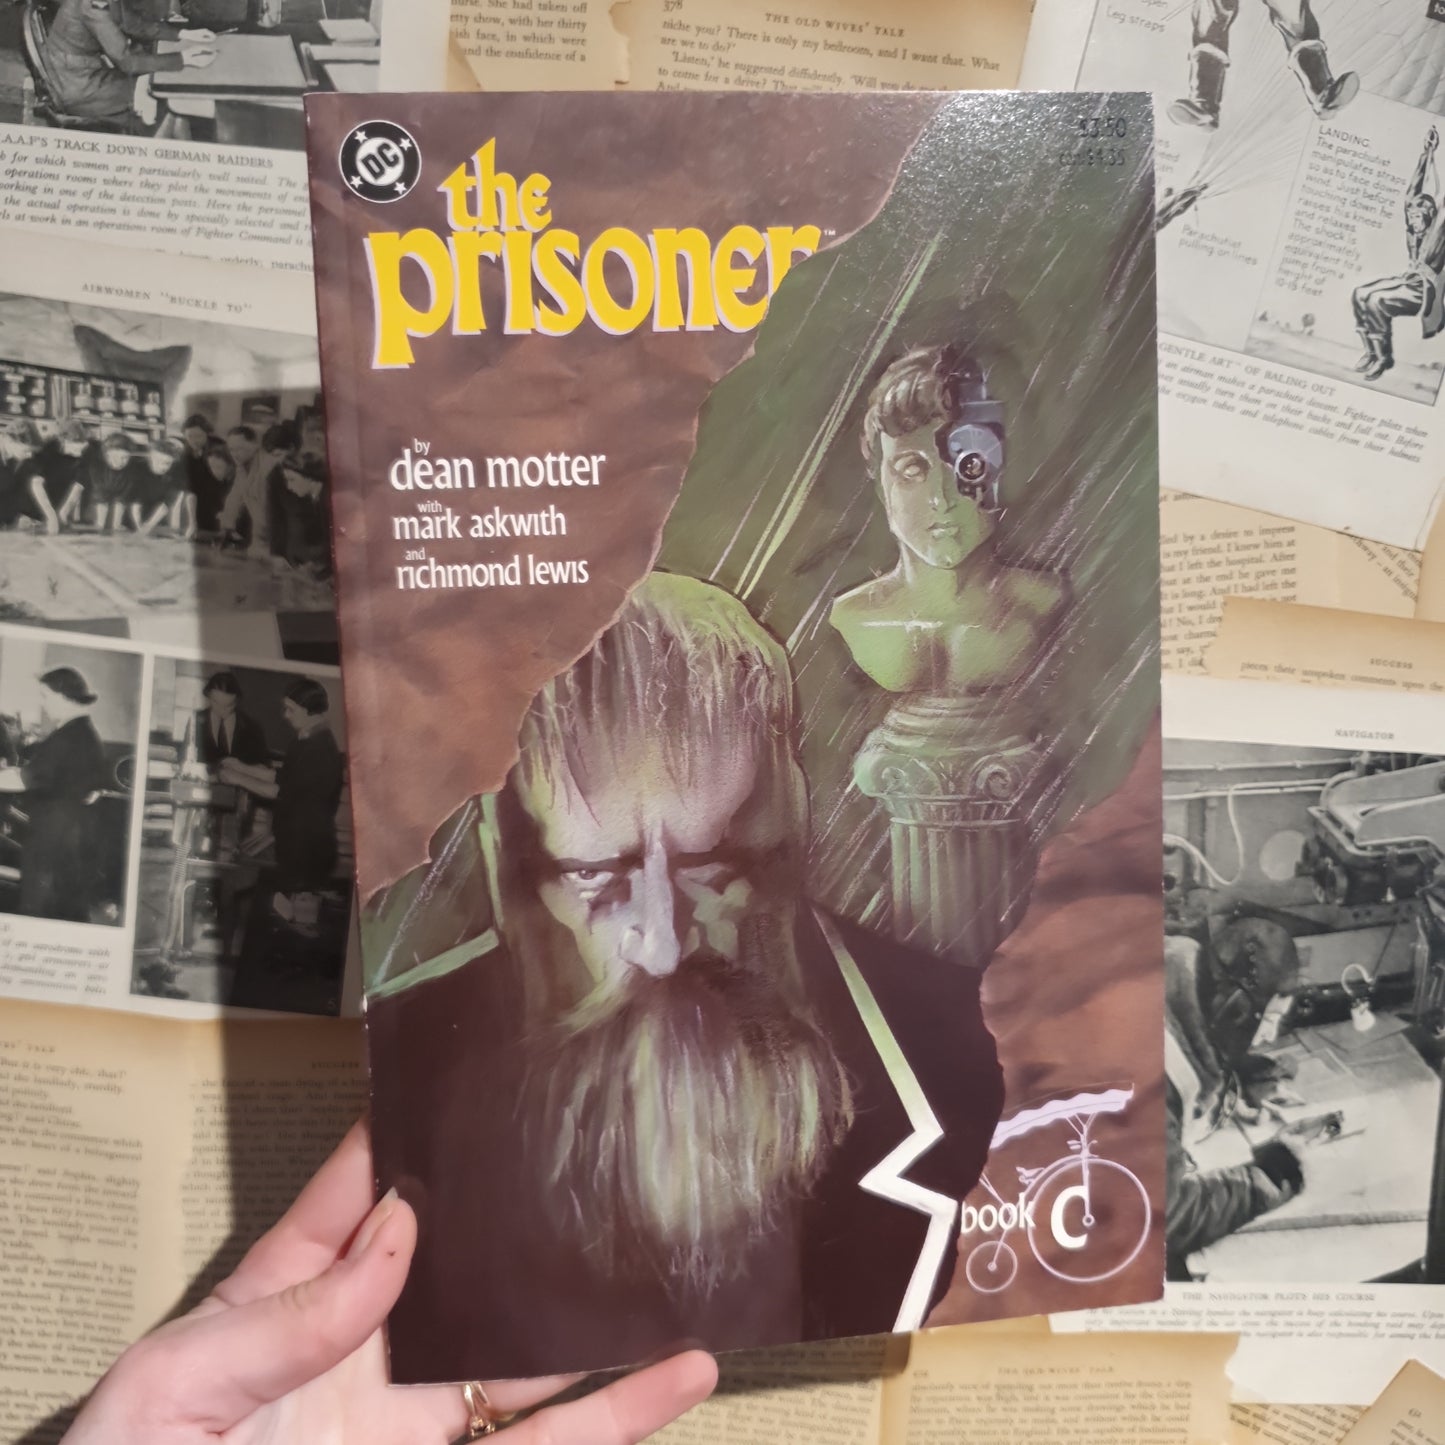 The Prisoner Book C by Dean Motter